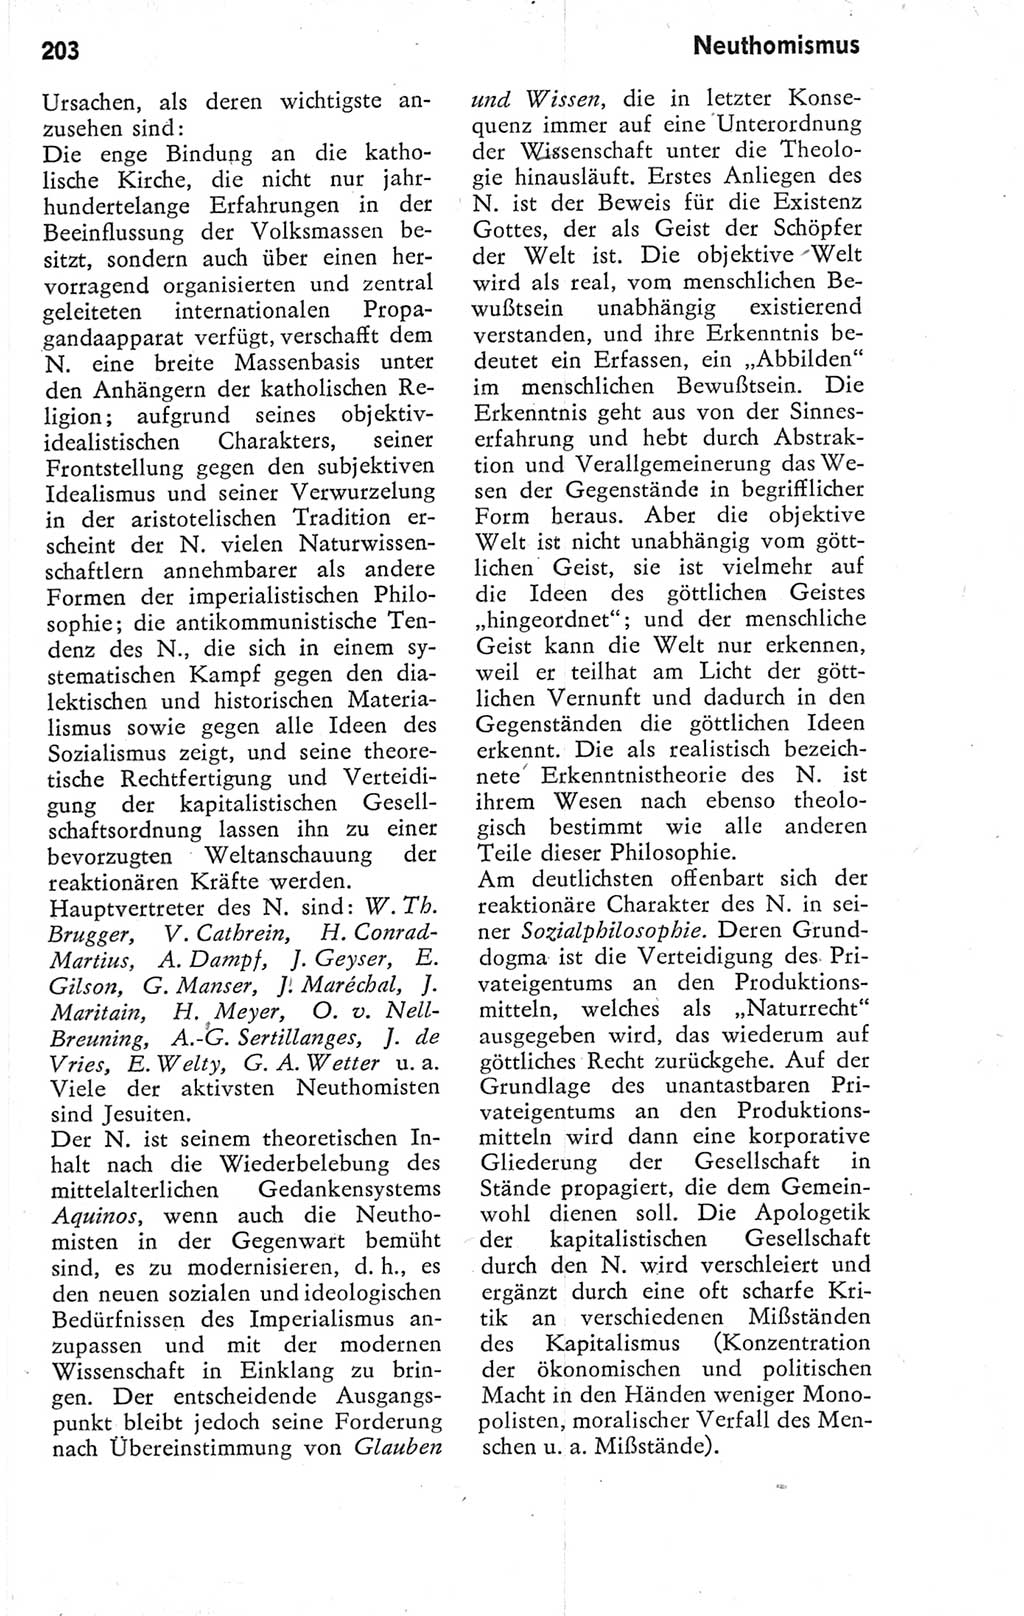 Kleines Wörterbuch der marxistisch-leninistischen Philosophie [Deutsche Demokratische Republik (DDR)] 1974, Seite 203 (Kl. Wb. ML Phil. DDR 1974, S. 203)